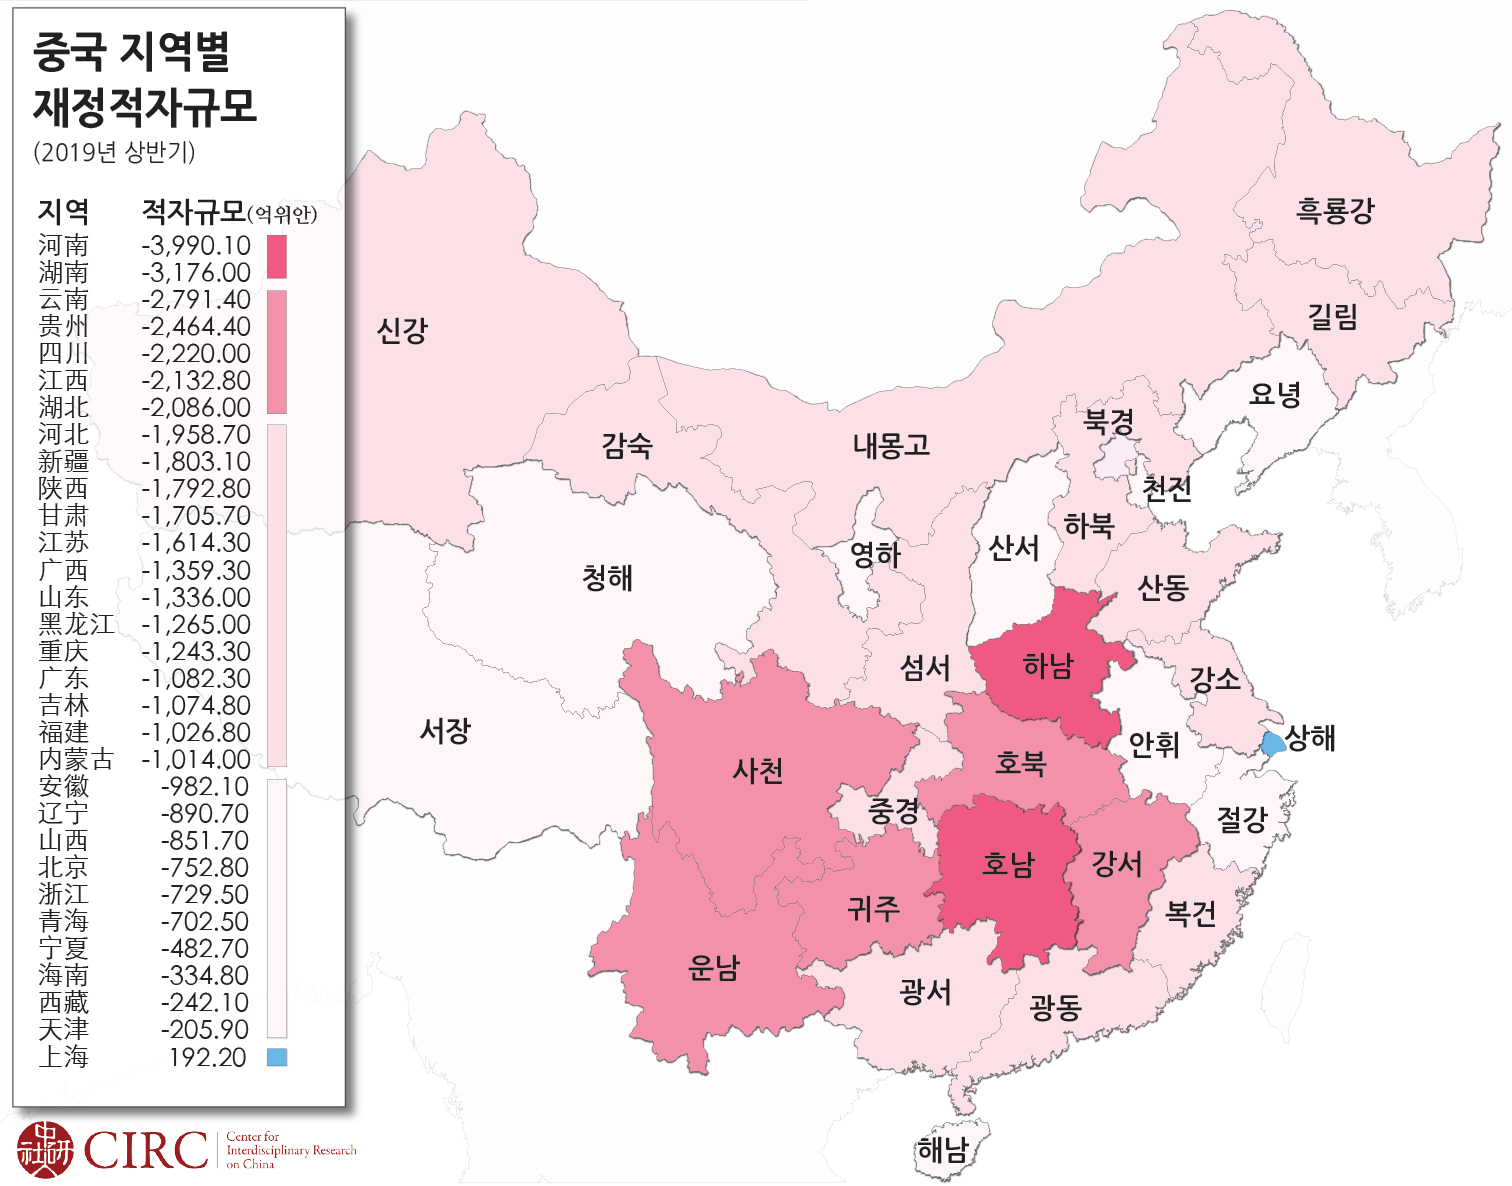 365_산업경제_서상민_2019년-상반기-중국-지역별-재정적자규모.jpg